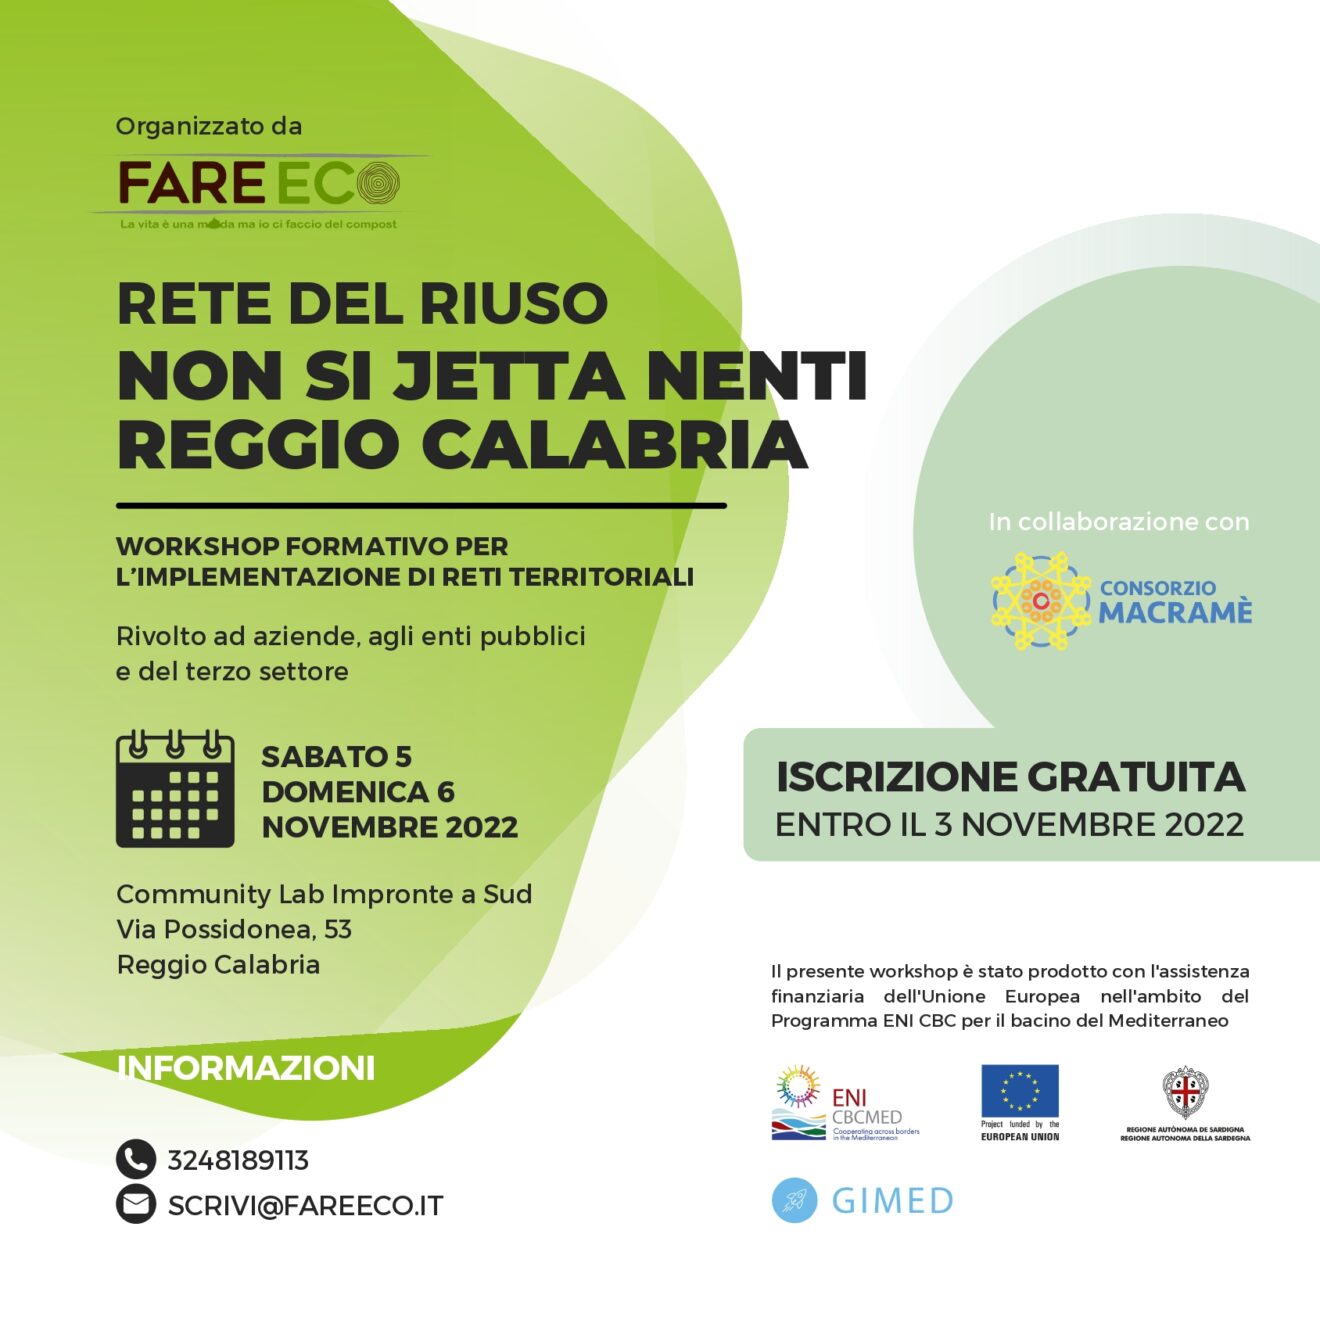 Workshop formativo progetto RETE DEL RIUSO “NON SI JETTA NENTI” – REGGIO CALABRIA